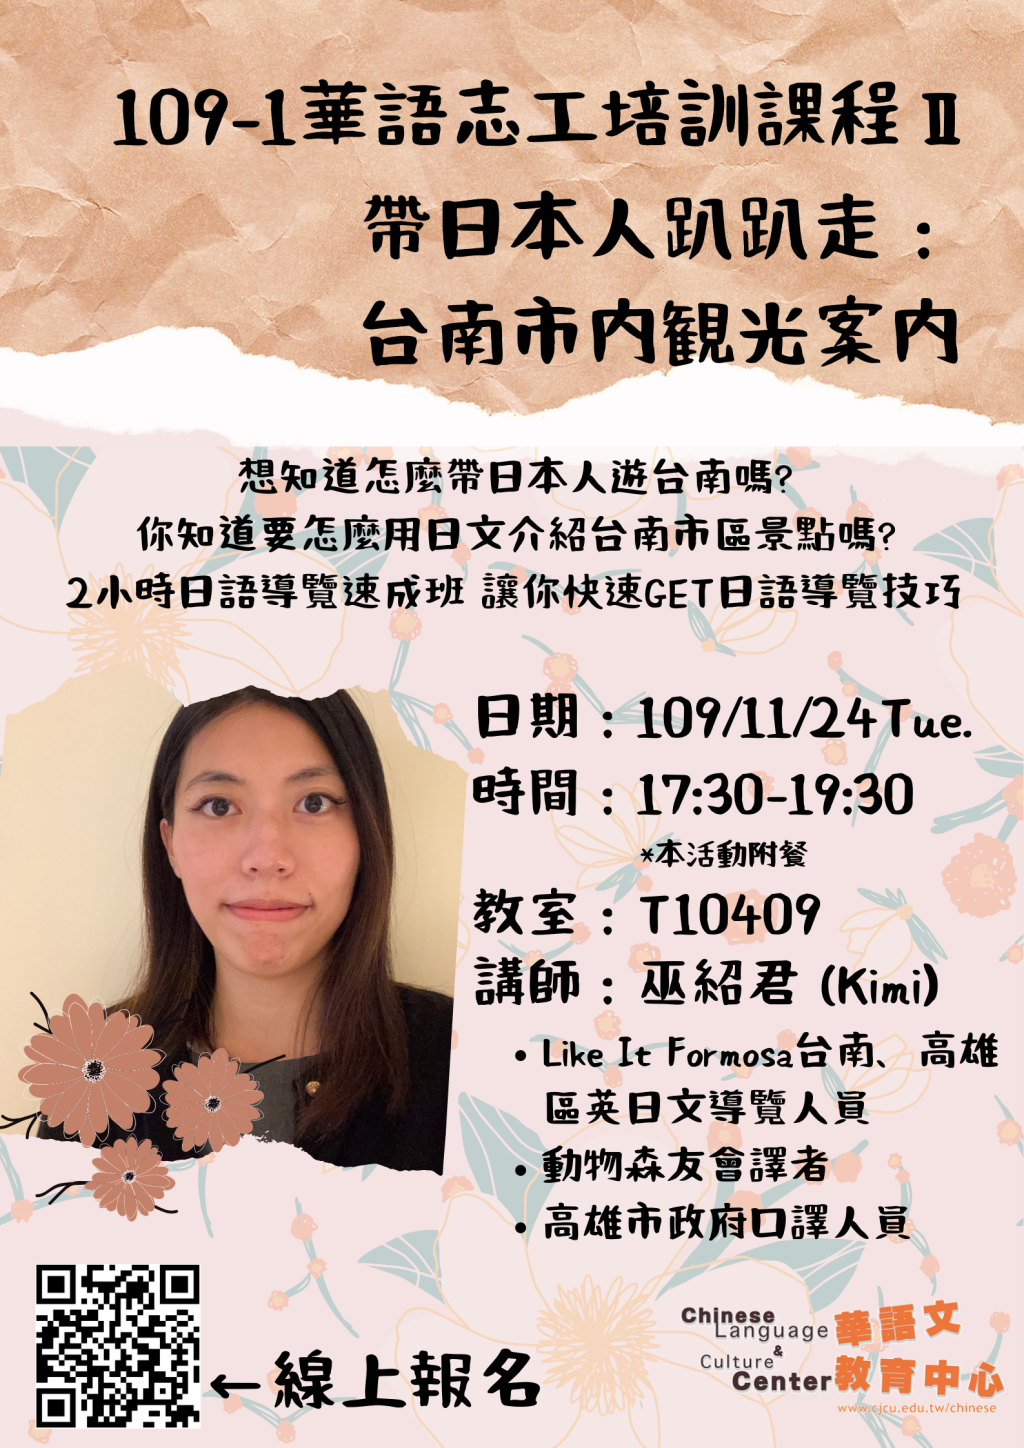 【講座】109-1華語志工培訓課程Ⅱ－帶日本人趴趴走：台南市観光案内